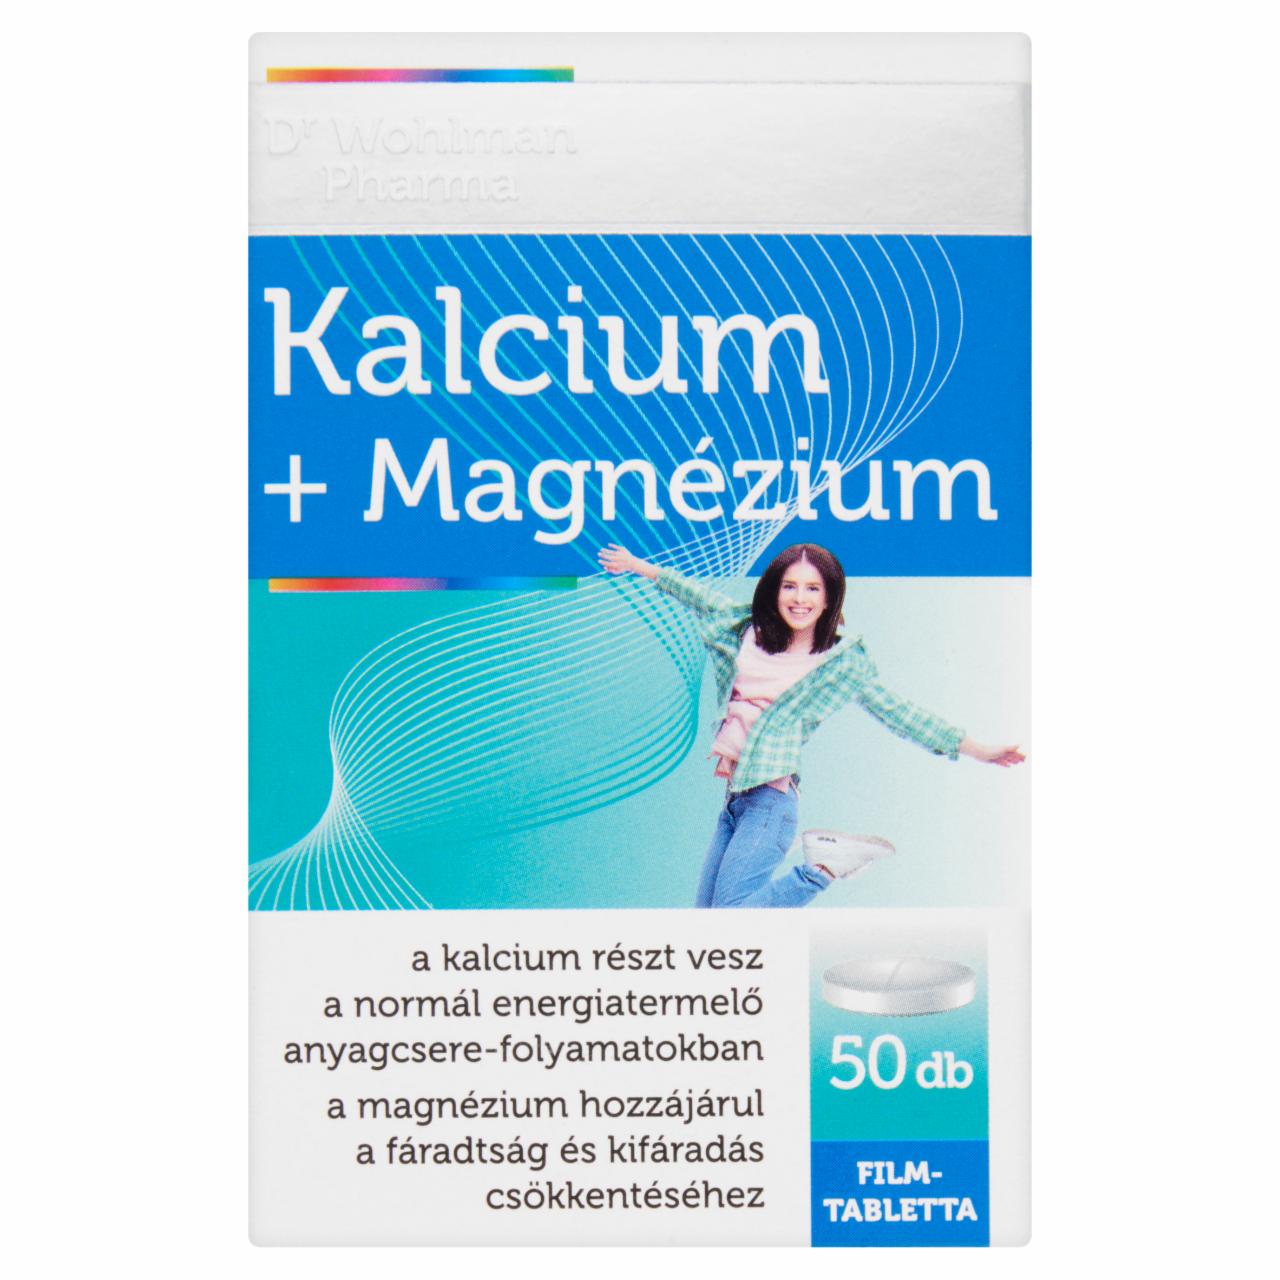 Képek - Dr. Wohlman Pharma Kalcium+Magnézium étrend-kiegészítő filmtabletta 50 db 70 g